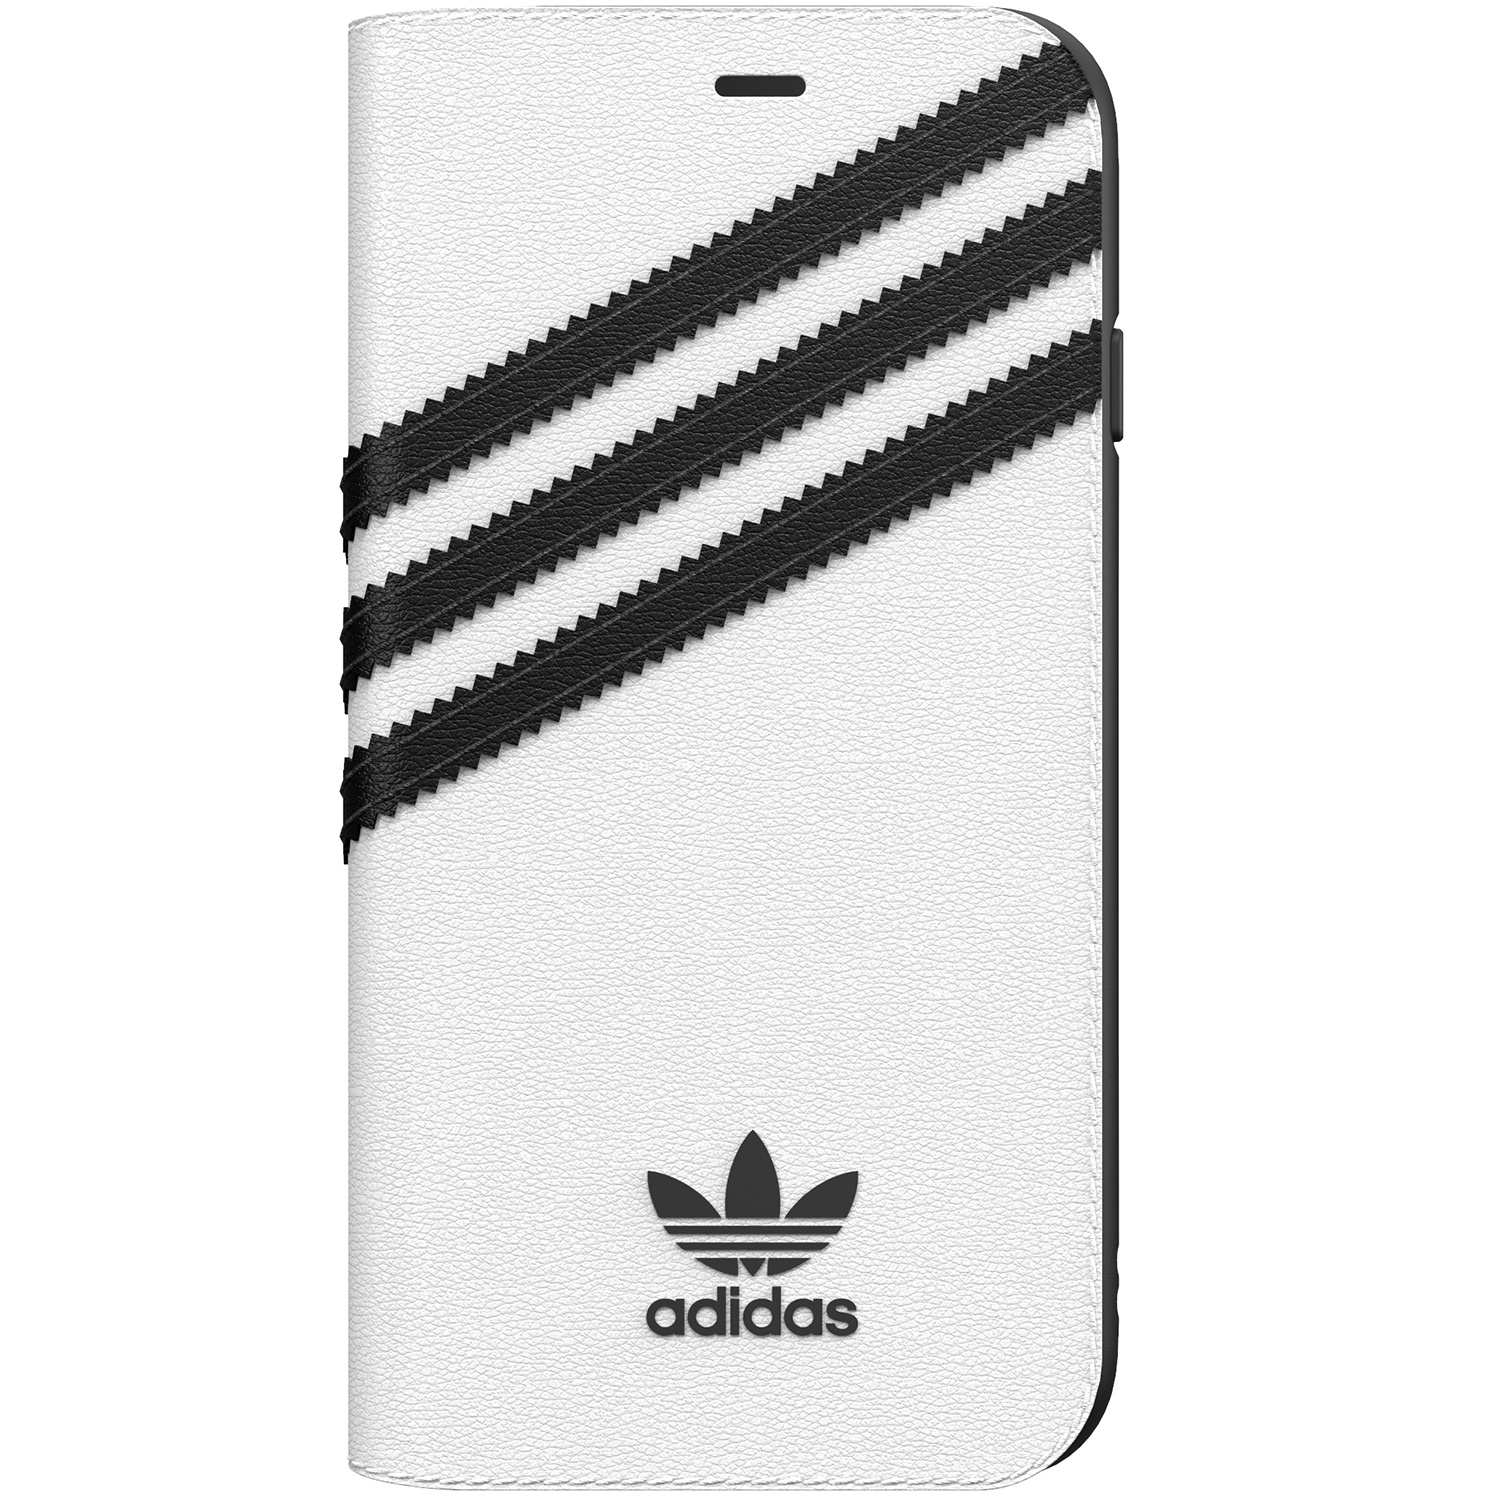 Adidas Originals Booklet Case Iphone Se 8 7